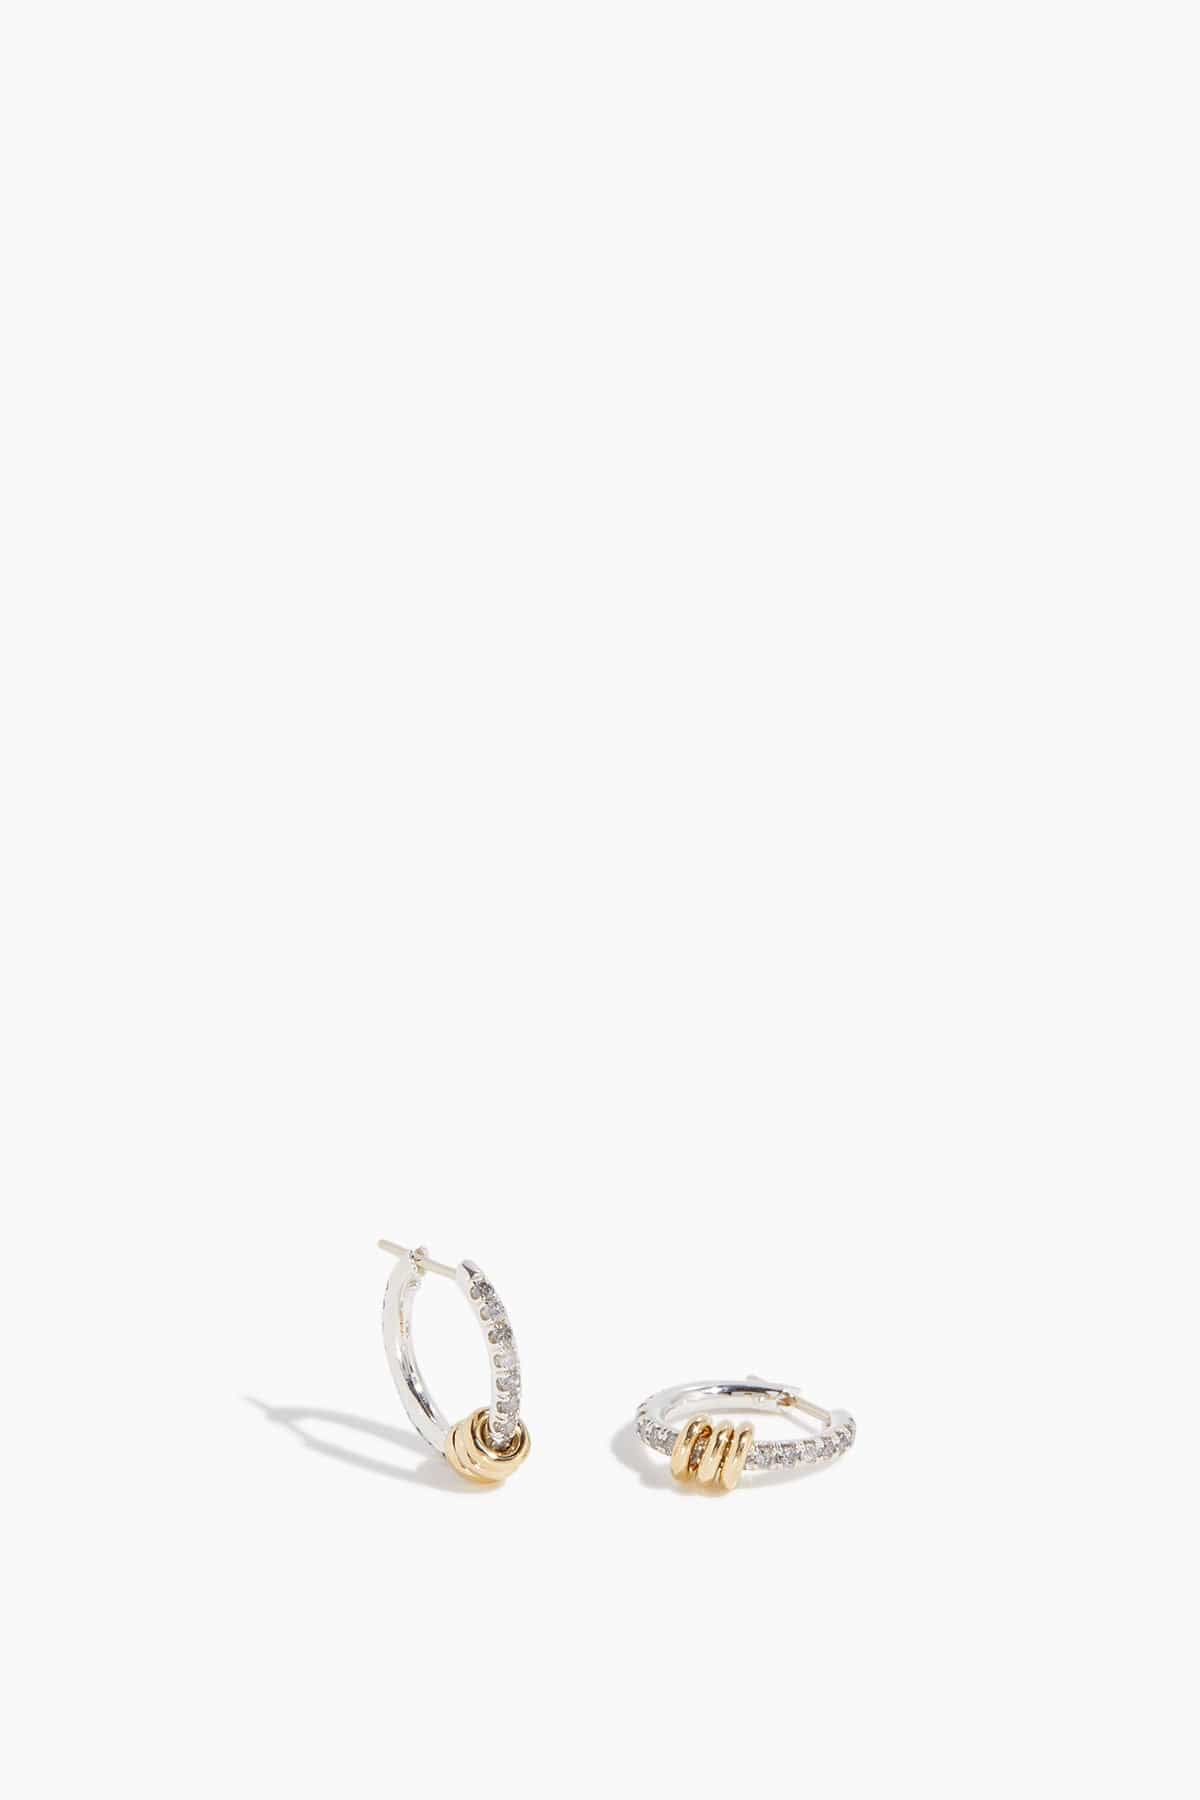 Spinelli Kilcollin Earrings Ara Pave SG Gris Hoop Earrings in 18k Yellow Gold